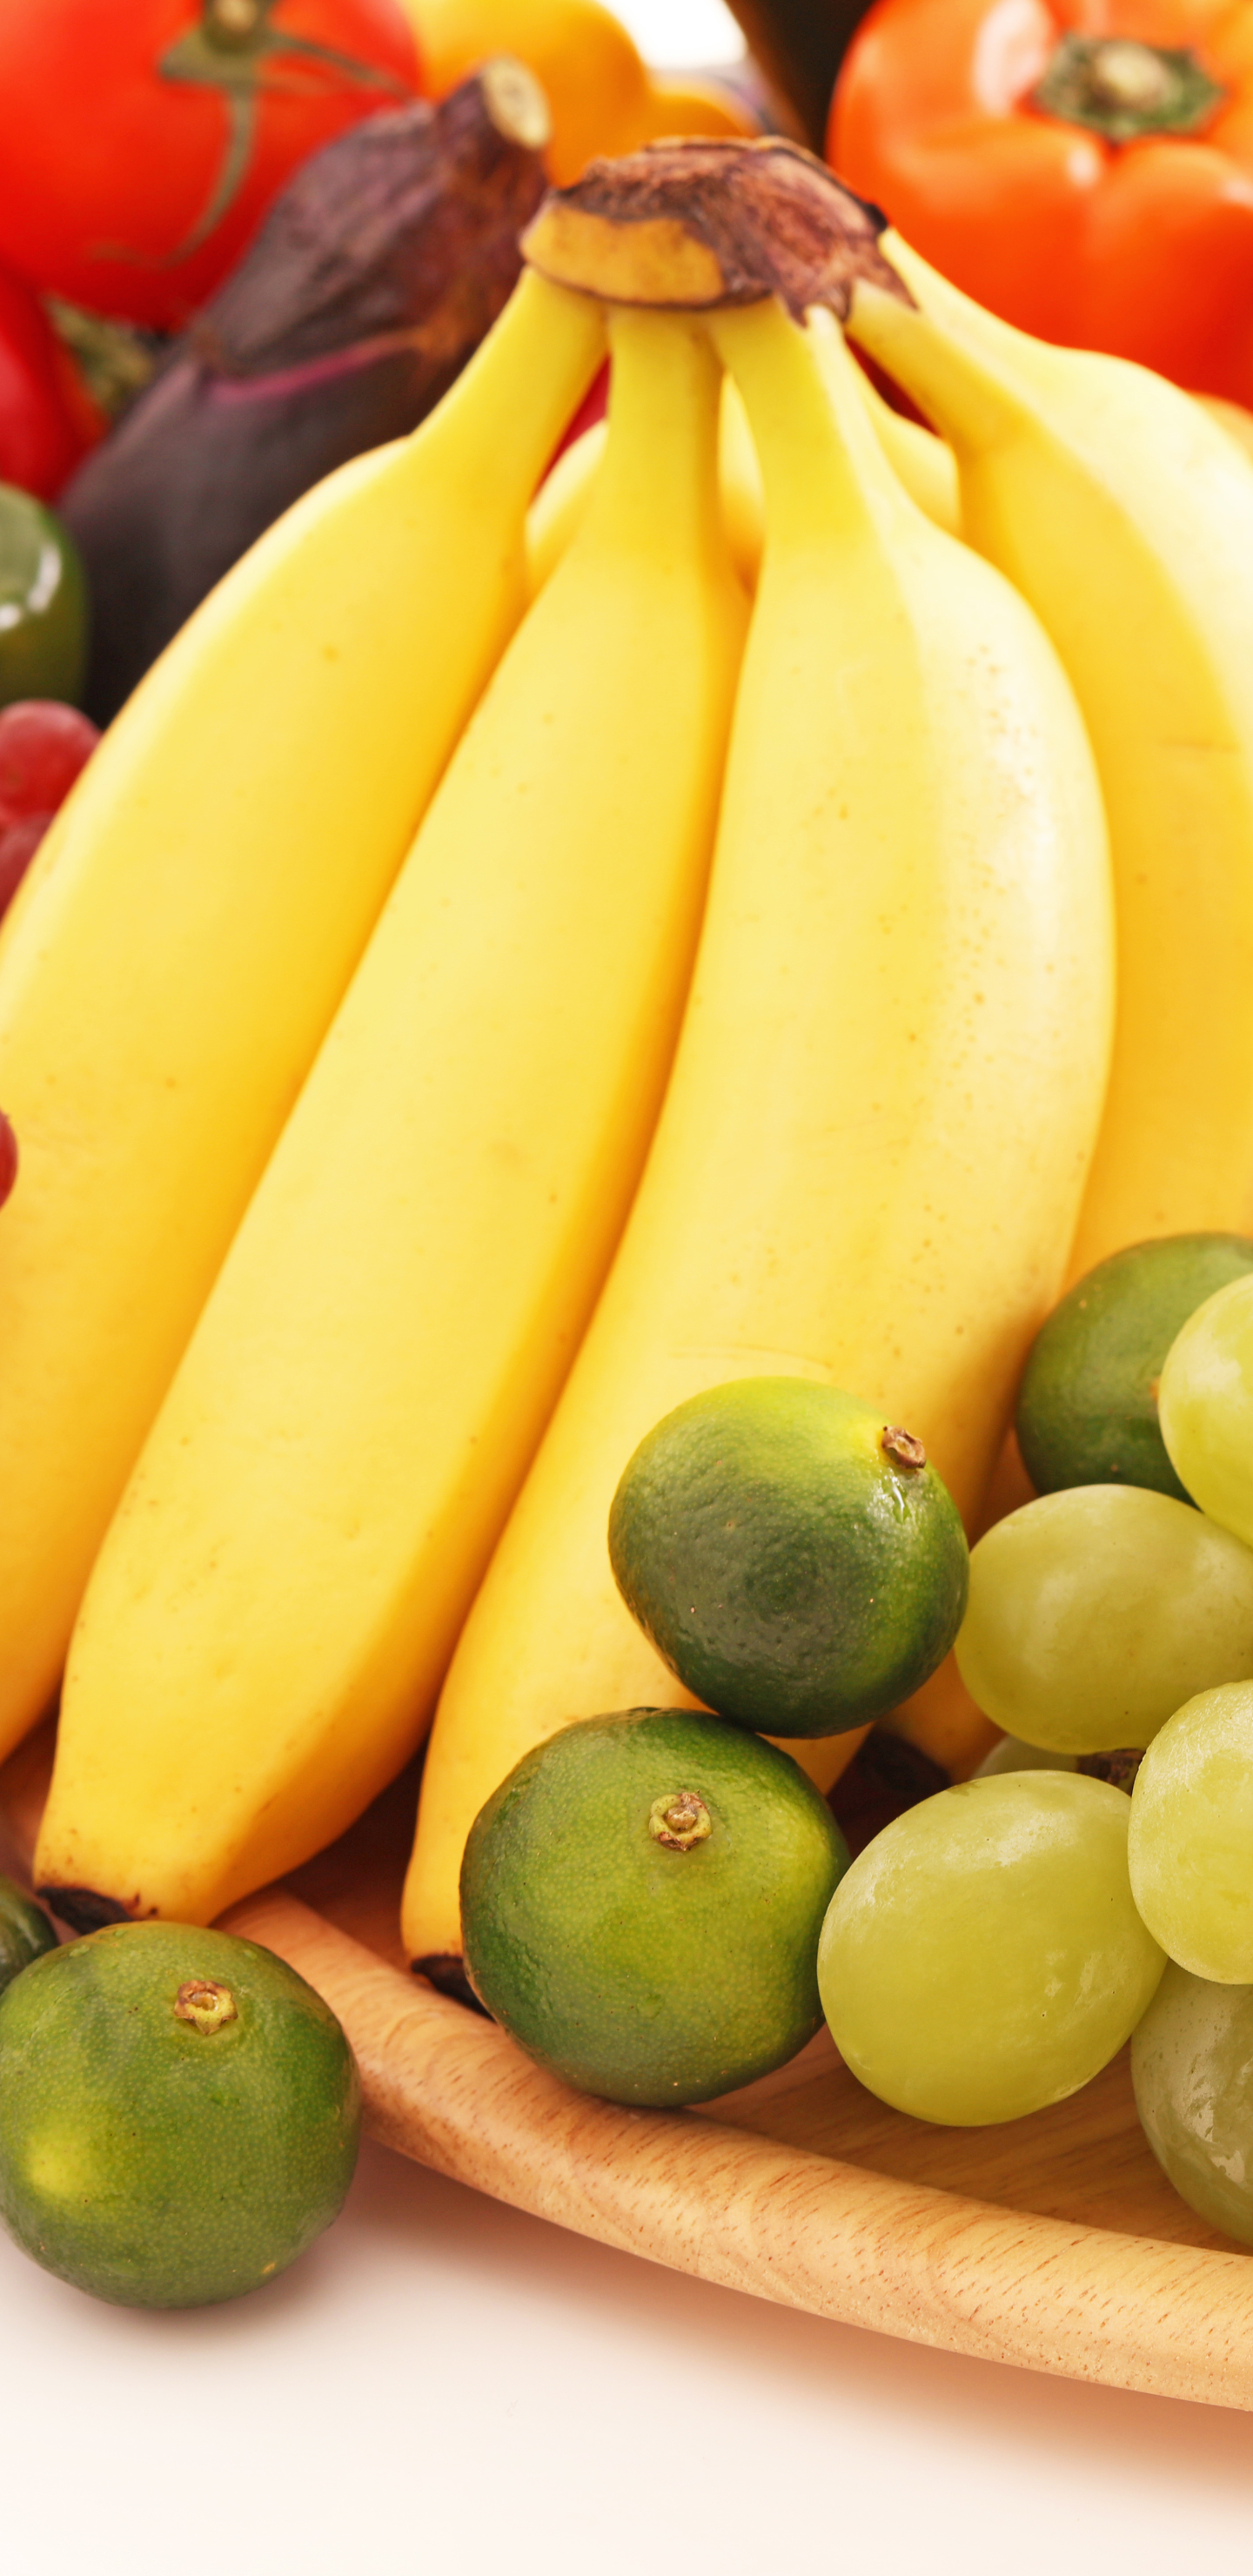 Free download wallpaper Fruits, Food, Grapes, Fruit, Banana, Vegetable, Fruits & Vegetables on your PC desktop